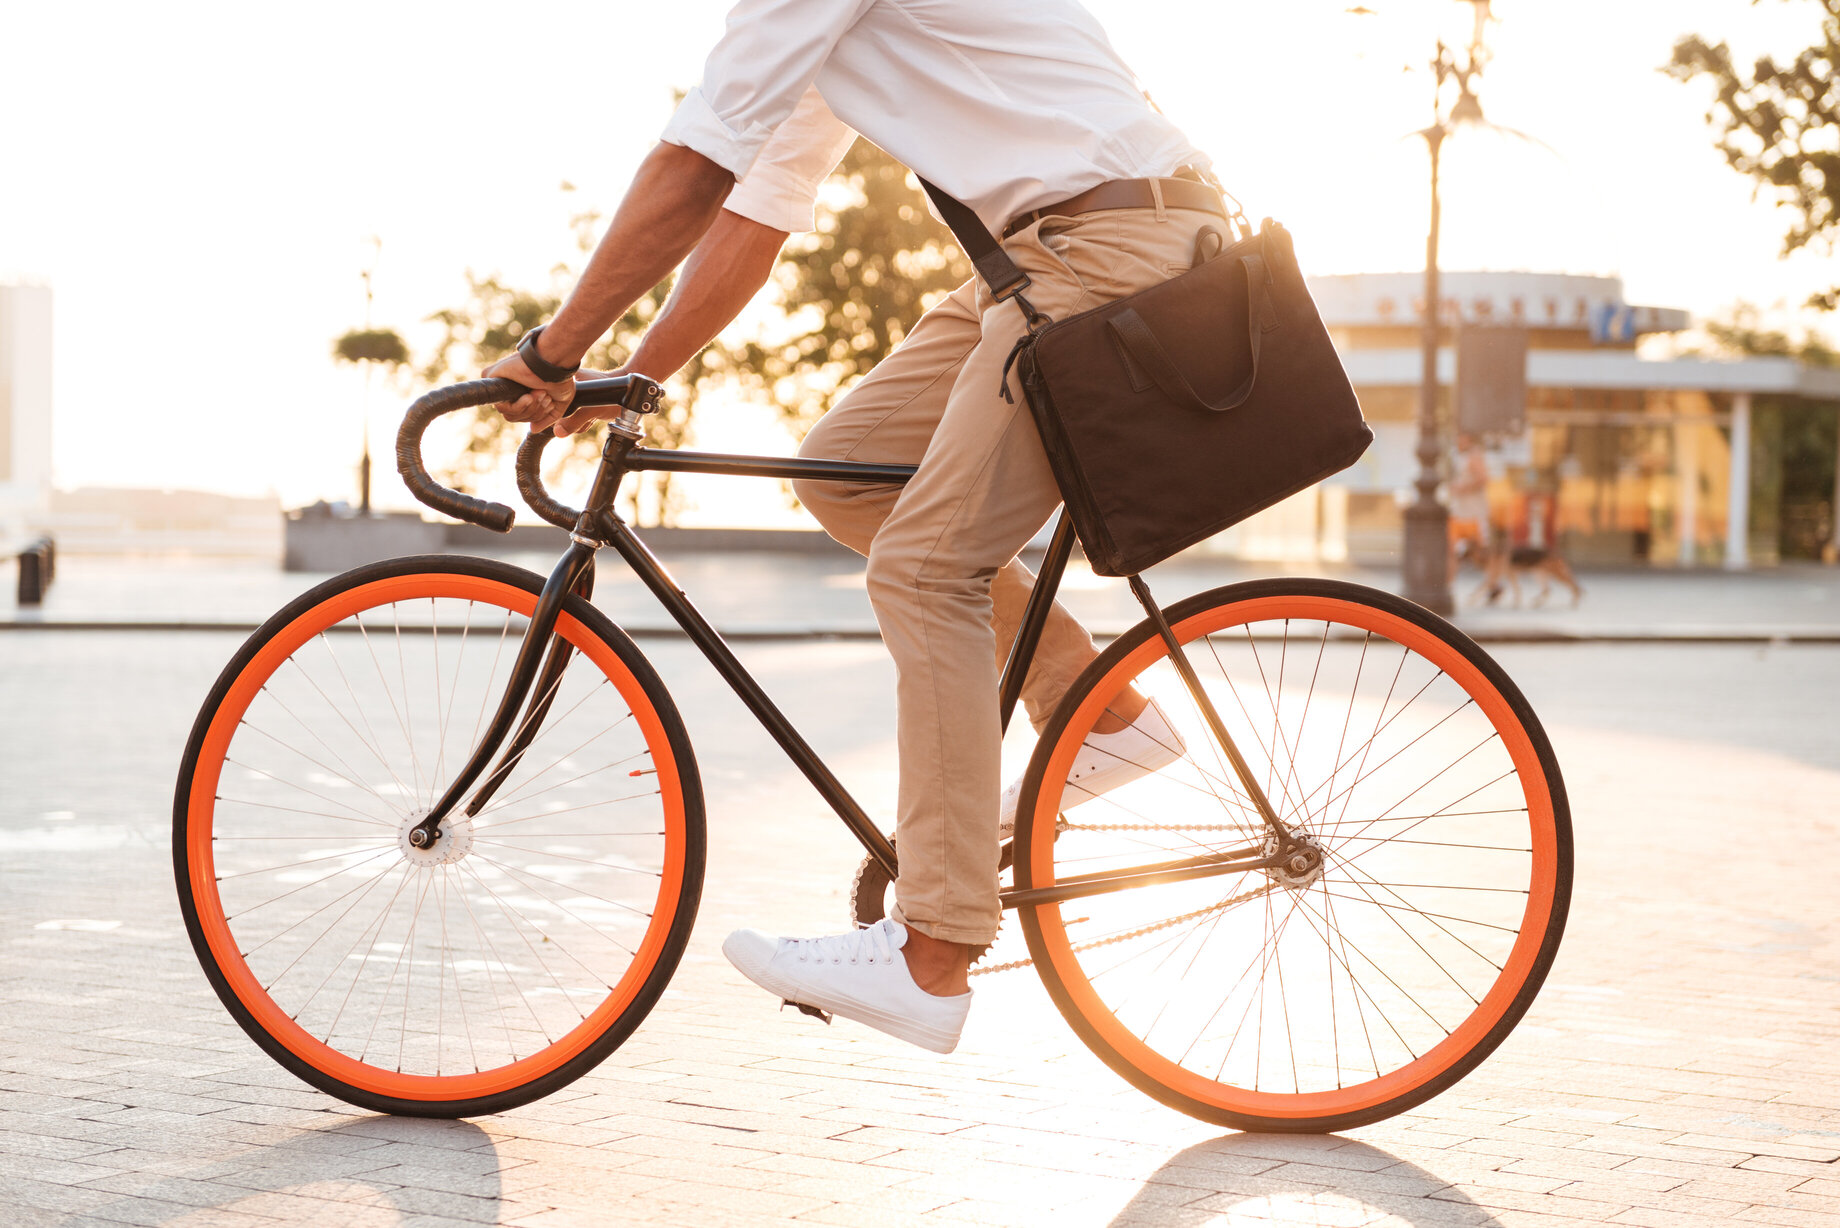 Bicicletas em condomínio: o que você deve saber